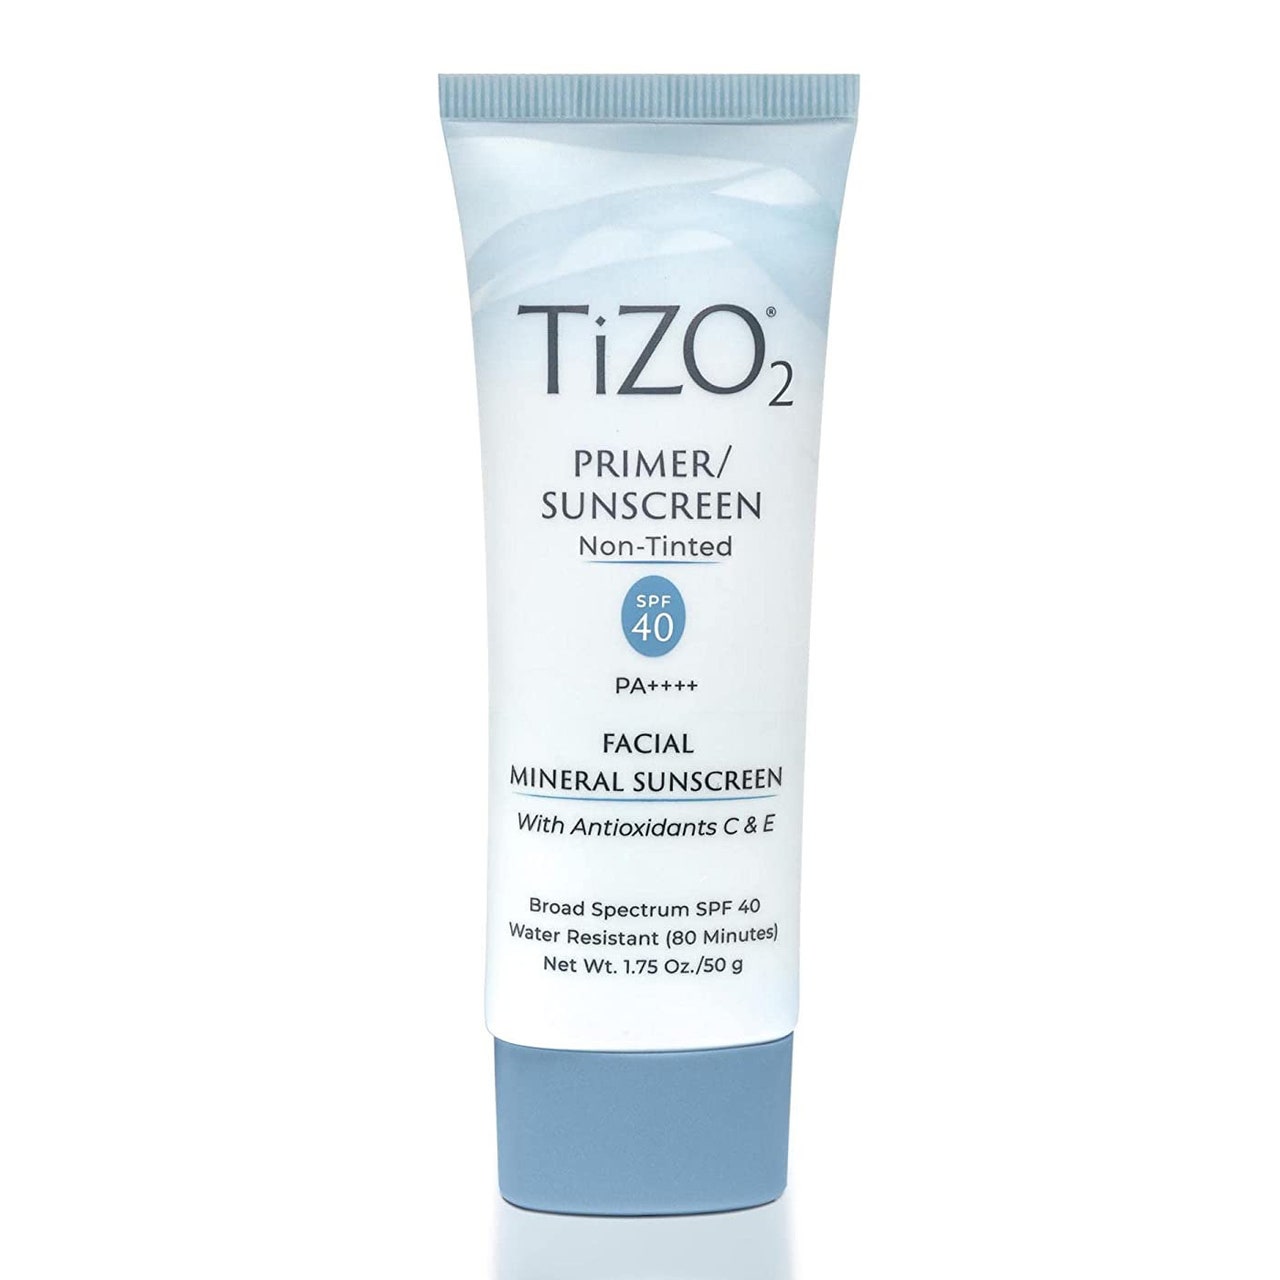 Tizo2 Facial Primer SPF 40 hellblaue Tube Sonnenschutz auf weißem Hintergrund